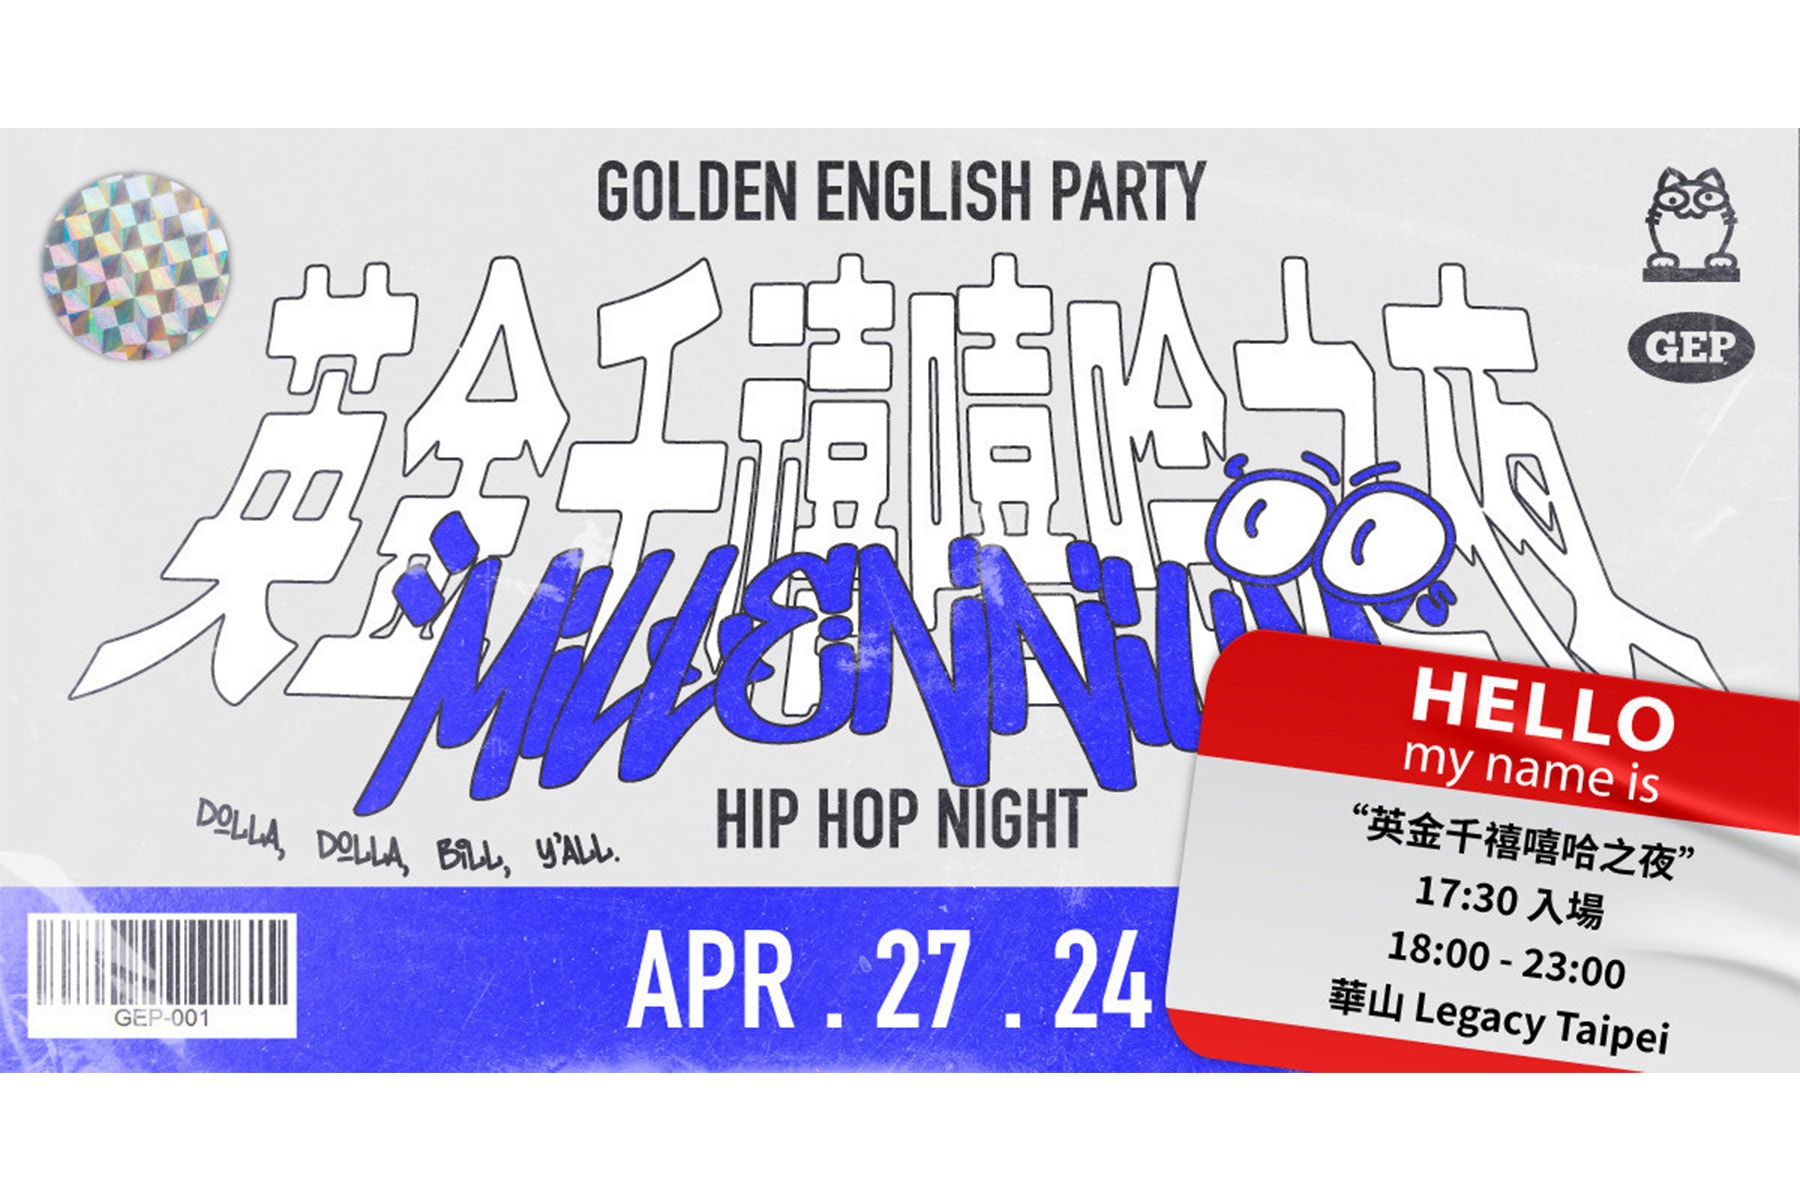 夢回千禧年派對！「英金千禧嘻哈之夜」活動資訊正式公開